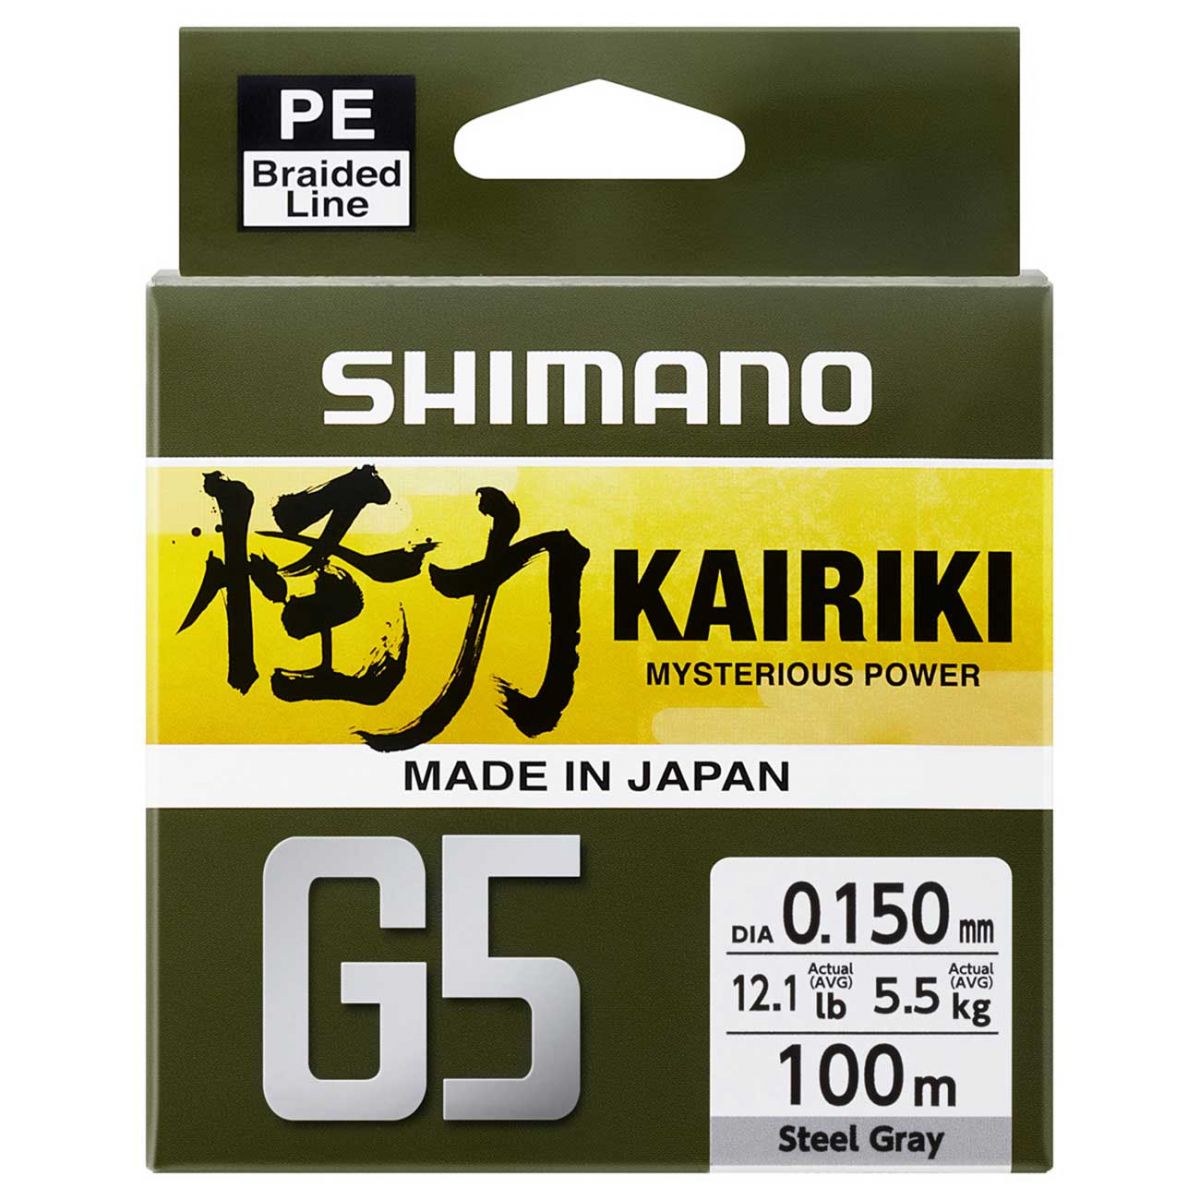 Shimano Kairiki G5 100mt  Gri Renk İp Misina,gri renk, 5 kat örgü seviyesi, tatlı su ve tuzlu su avlarınızda gönül rahatlığı ile kullanabileceğiniz made in japan ip misina serisi